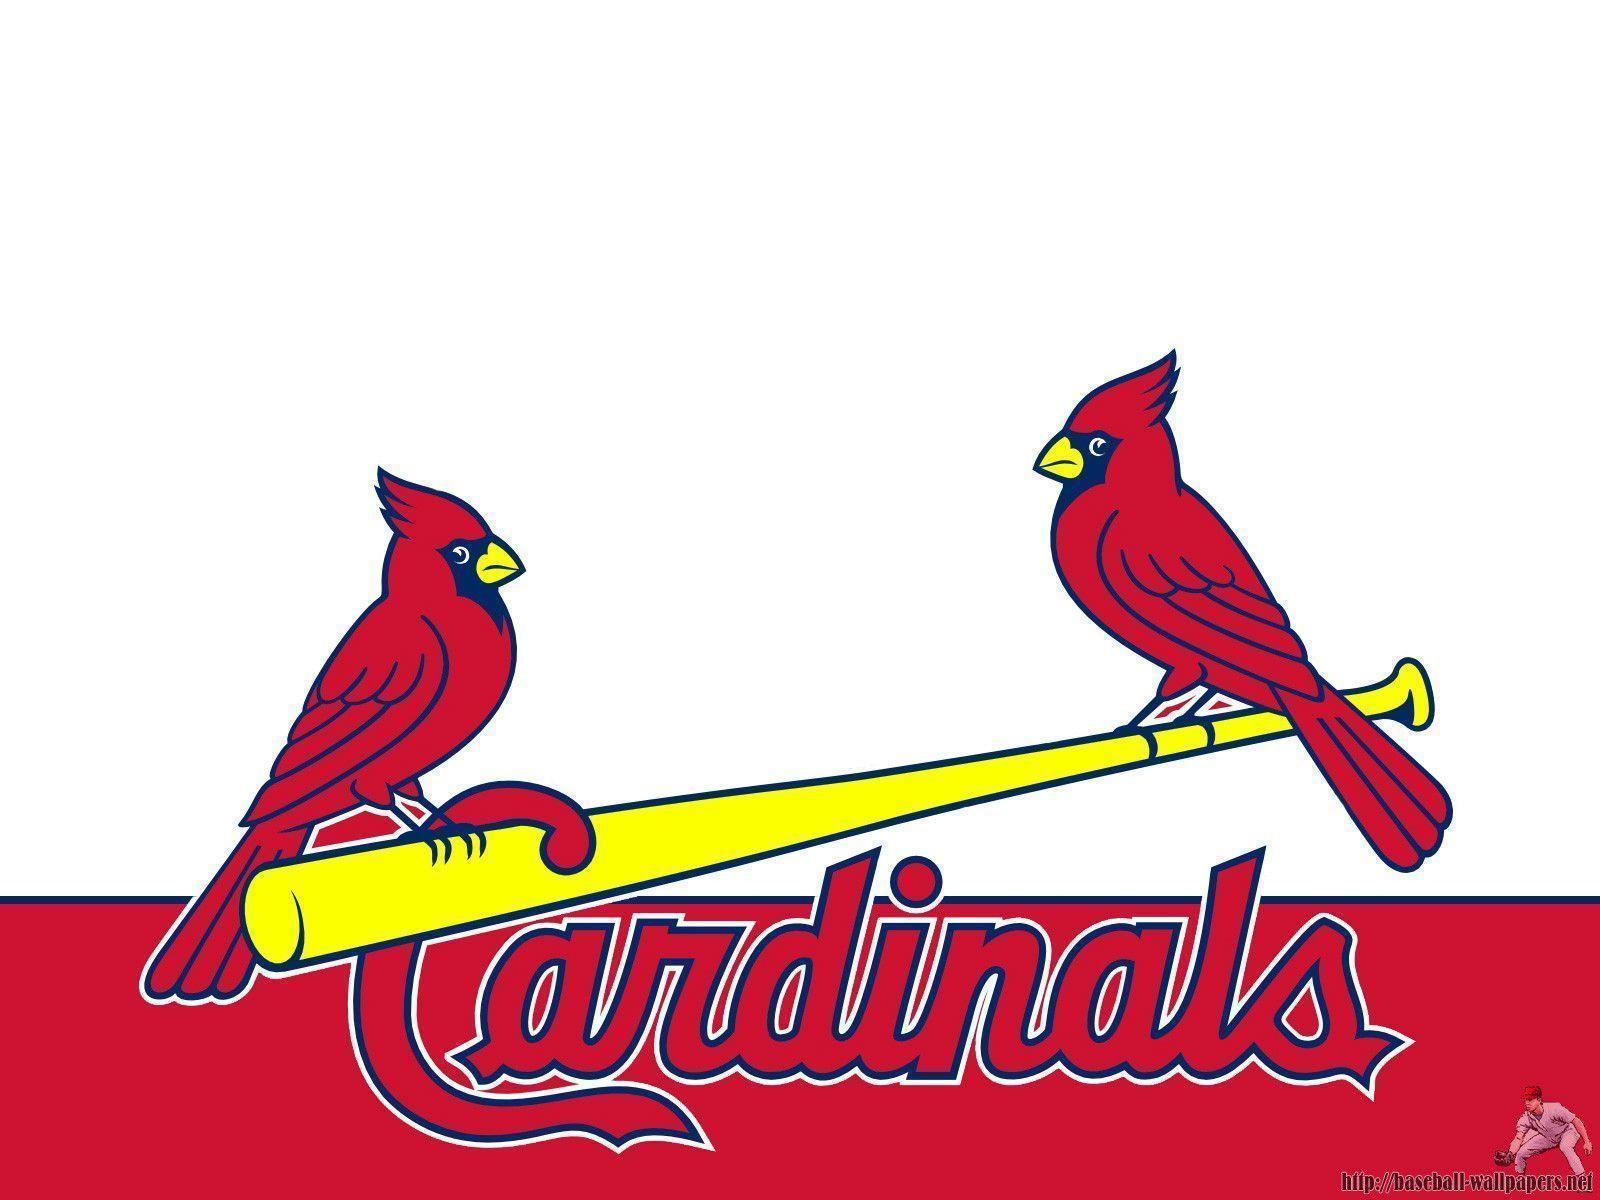 St. Louis Cardinals HD desktop wallpaper. St. Louis Cardinals